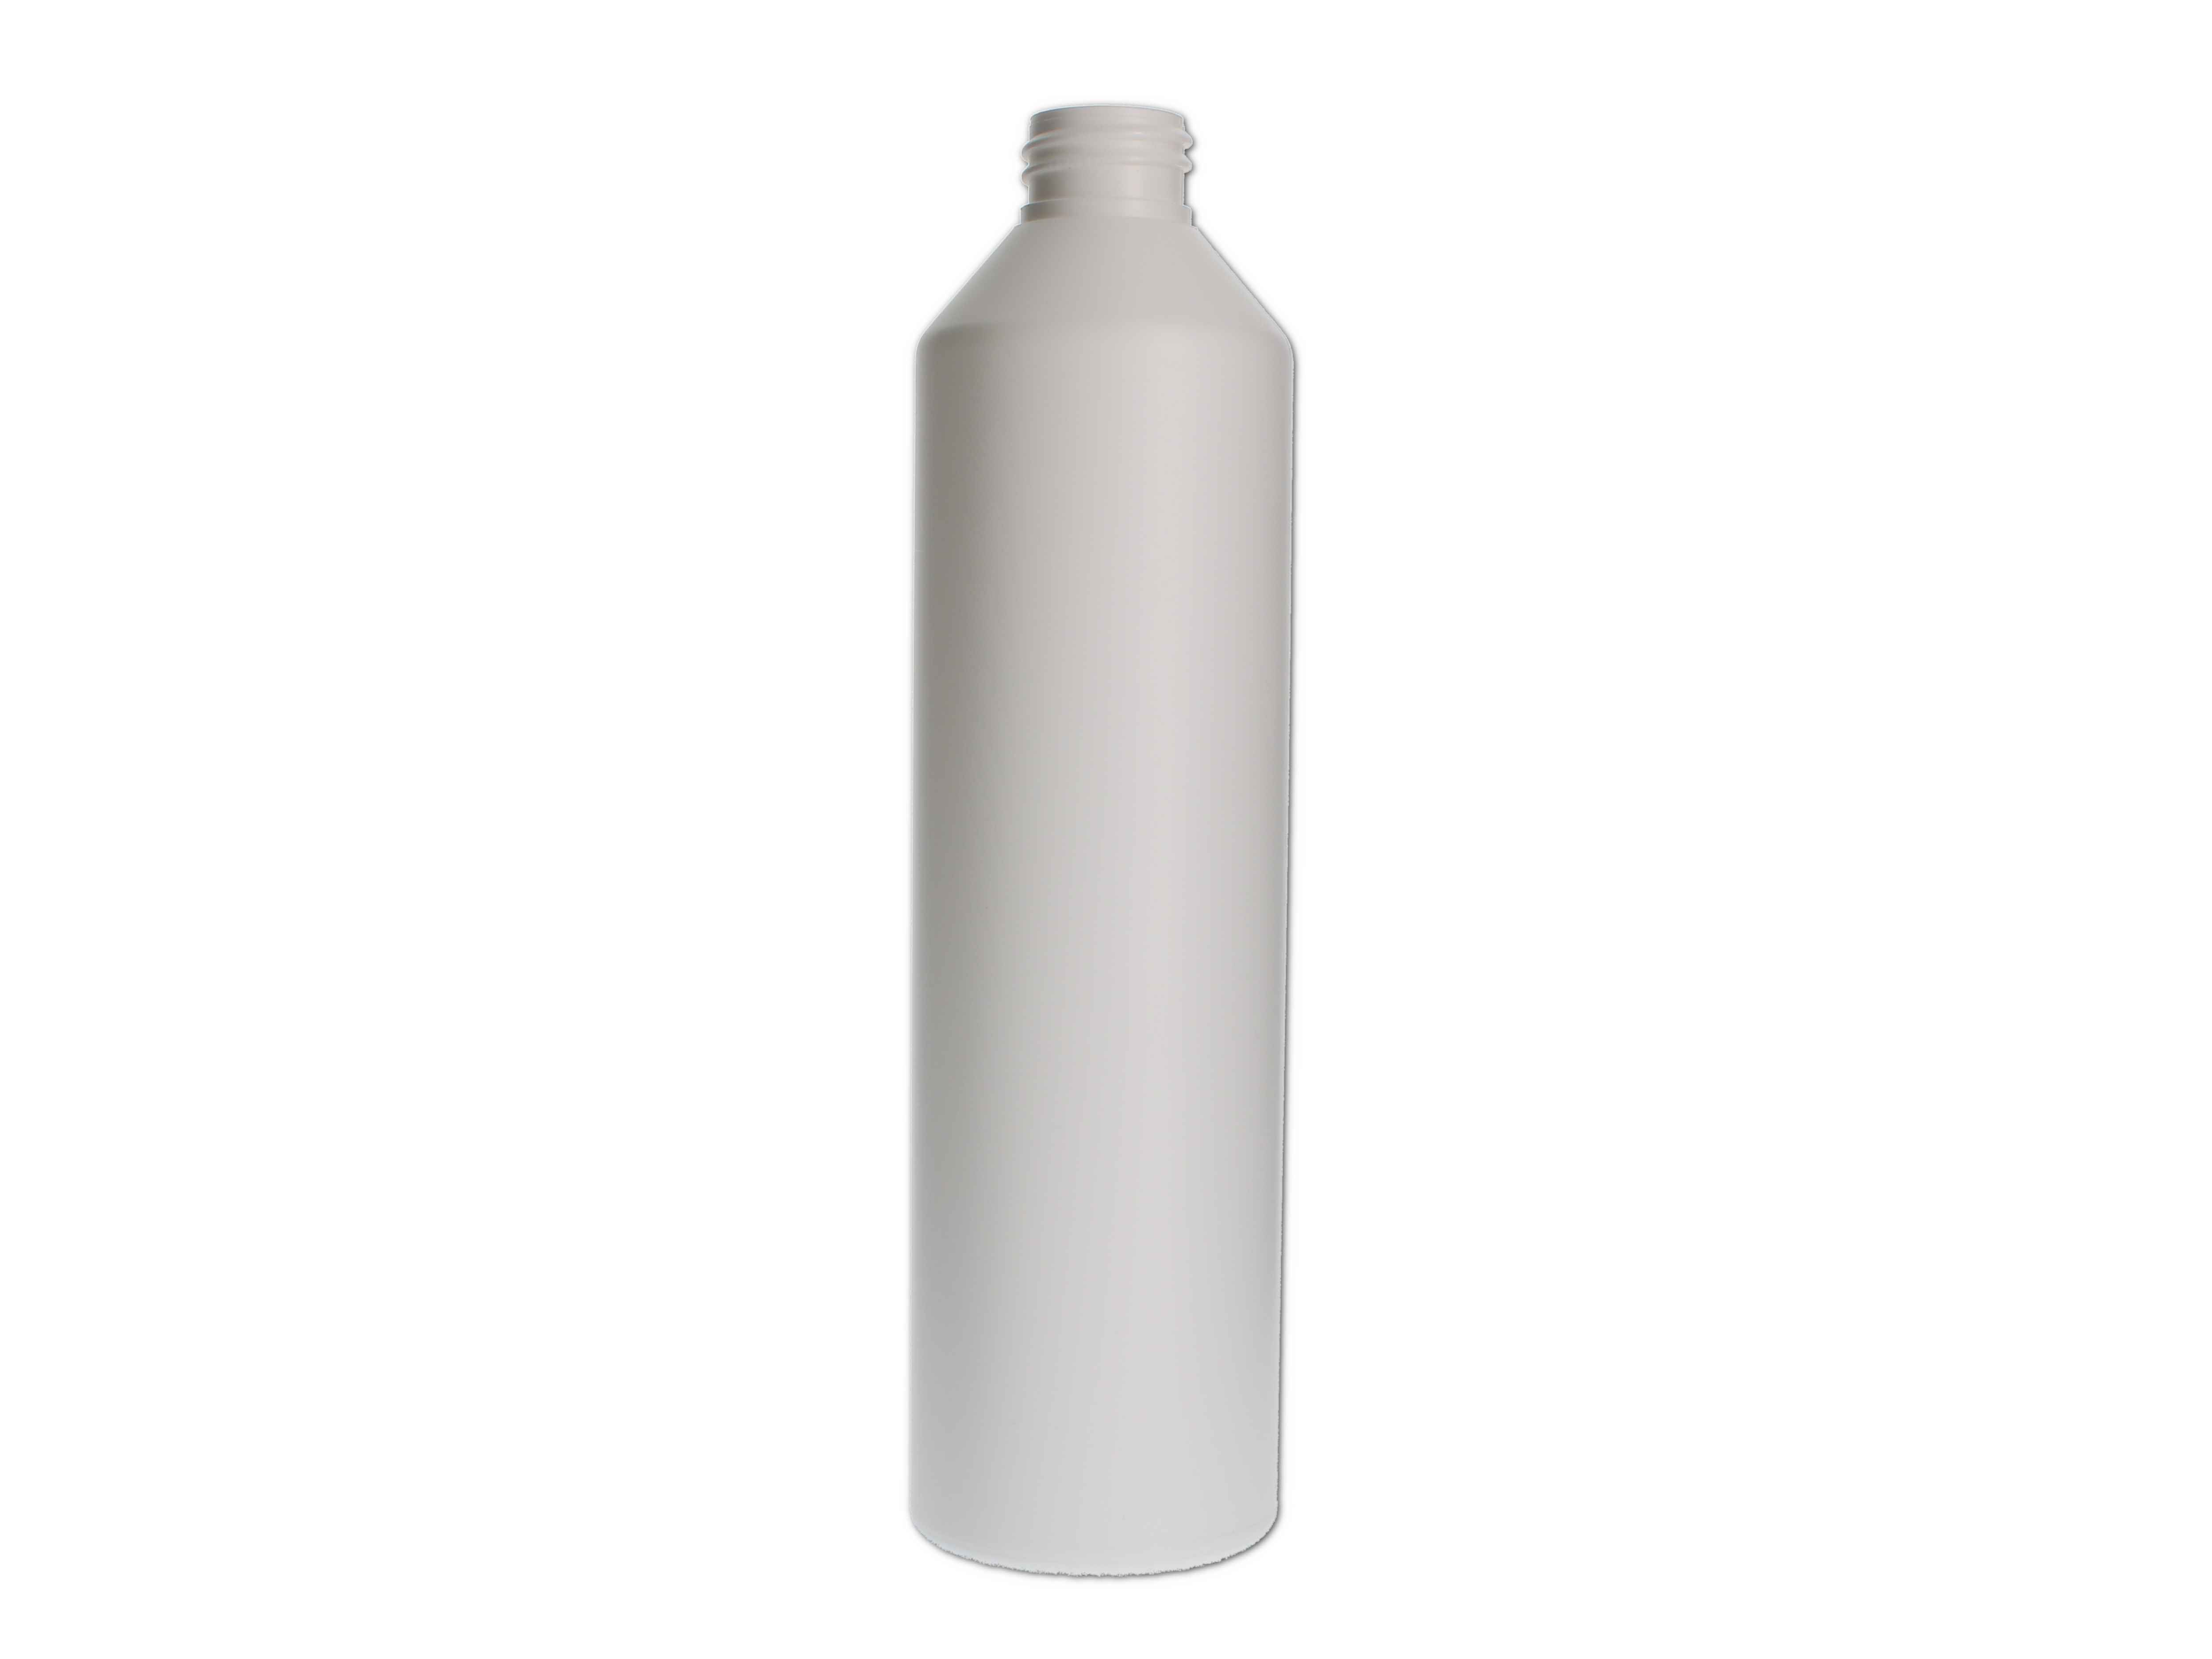    Kosmetikflasche, Kunststoff weiß, RD28 rund 500ml